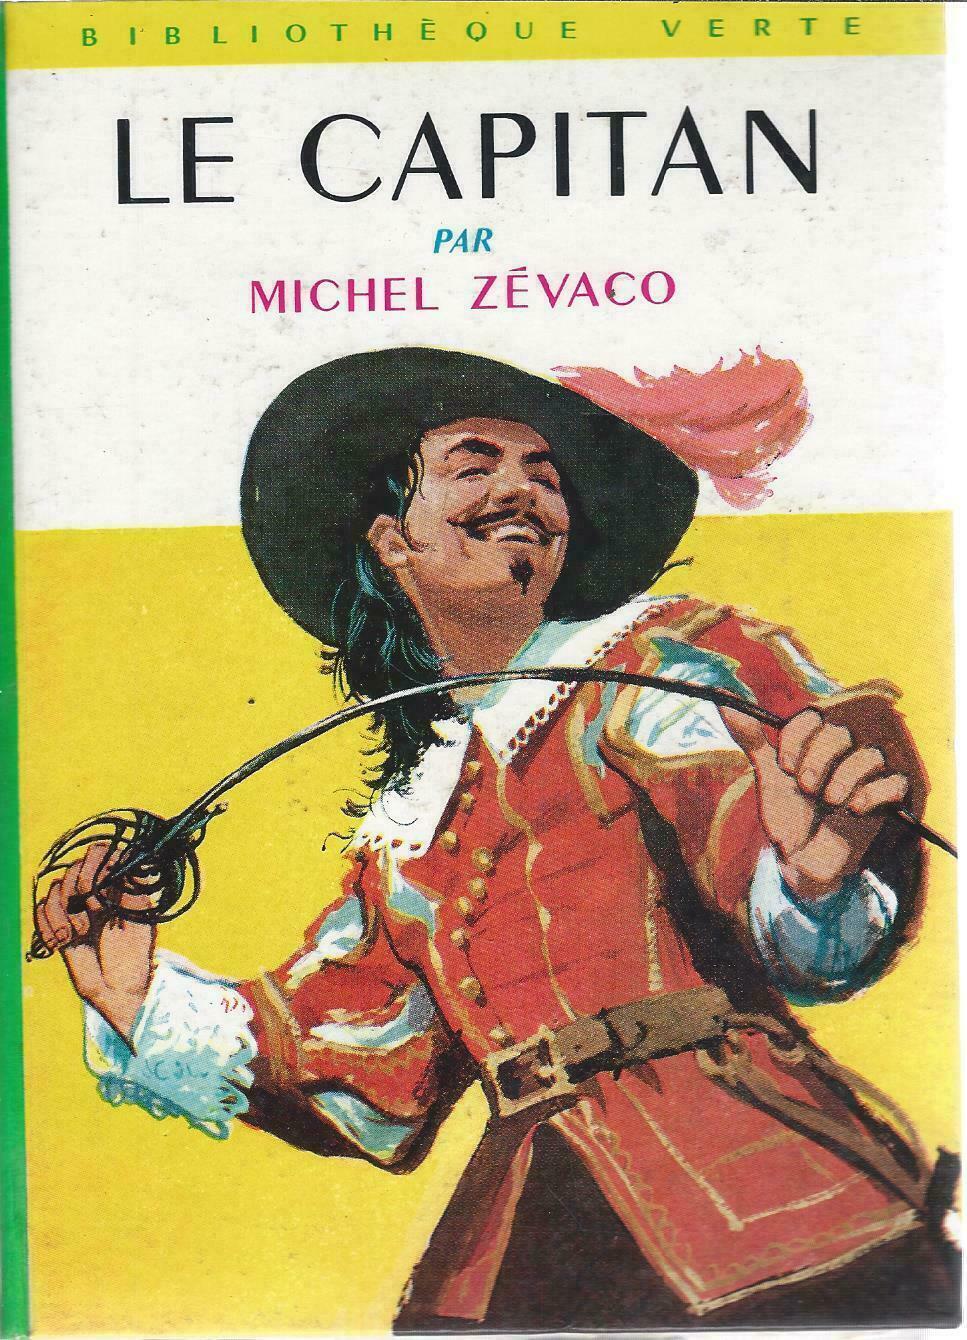 Book - The Capitan - Michel Zevaco - Bookcase Green Hardback 1962 X